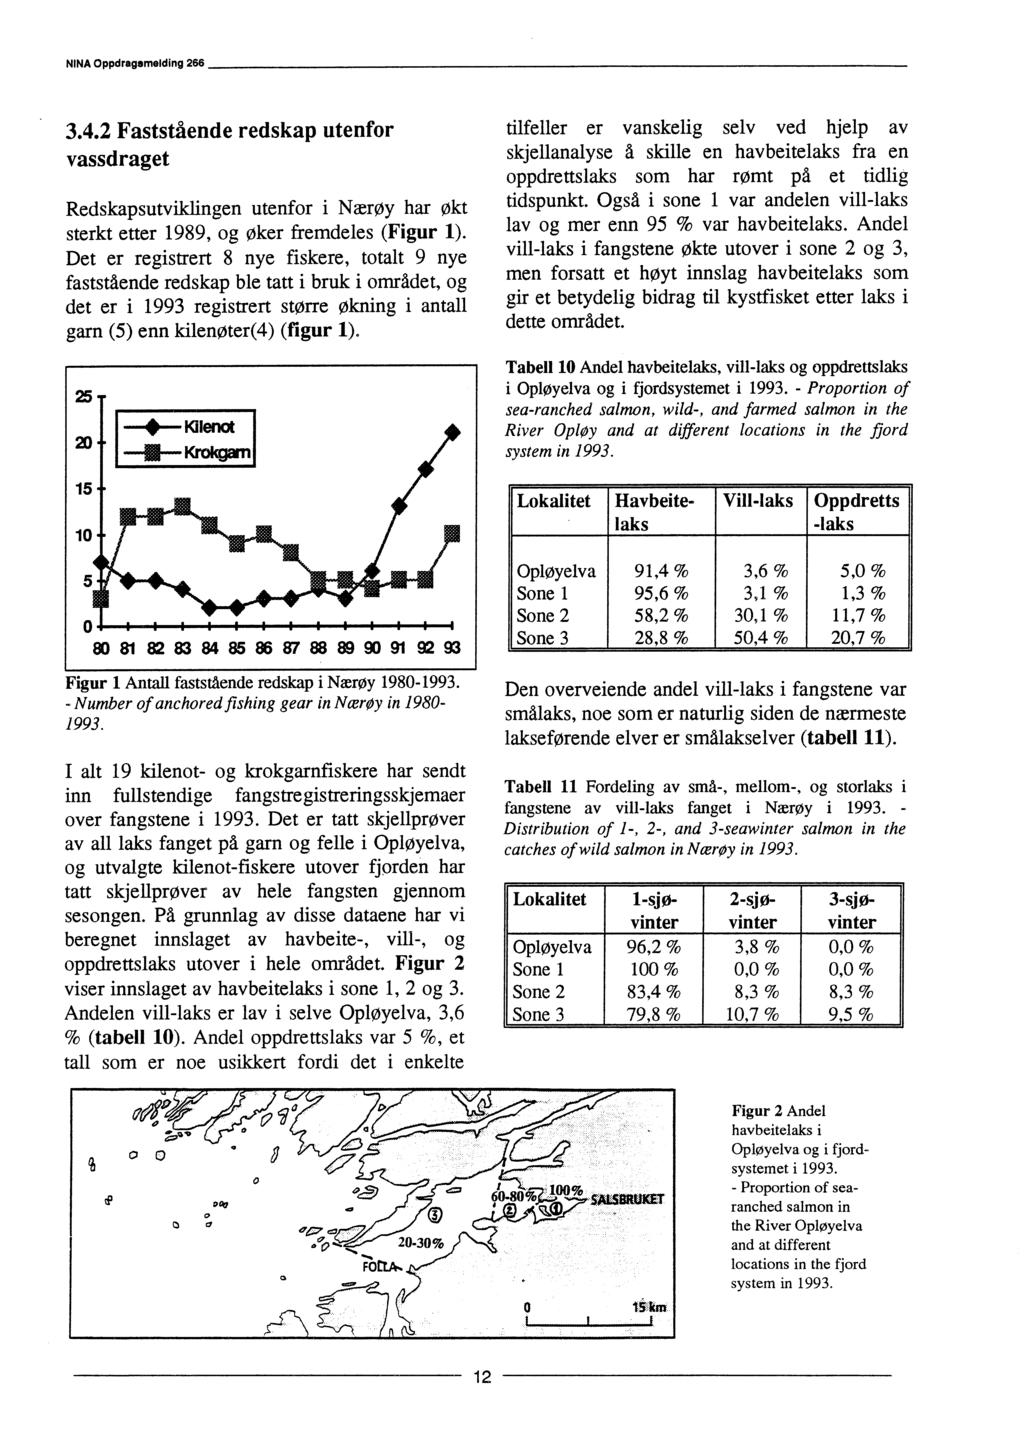 NINA Oppdragemelding 266 3.4.2 Faststående redskap utenfor vassdraget Redskapsutviklingen utenfor i Nærøy har økt sterkt etter 1989, og øker fremdeles (Figur 1).